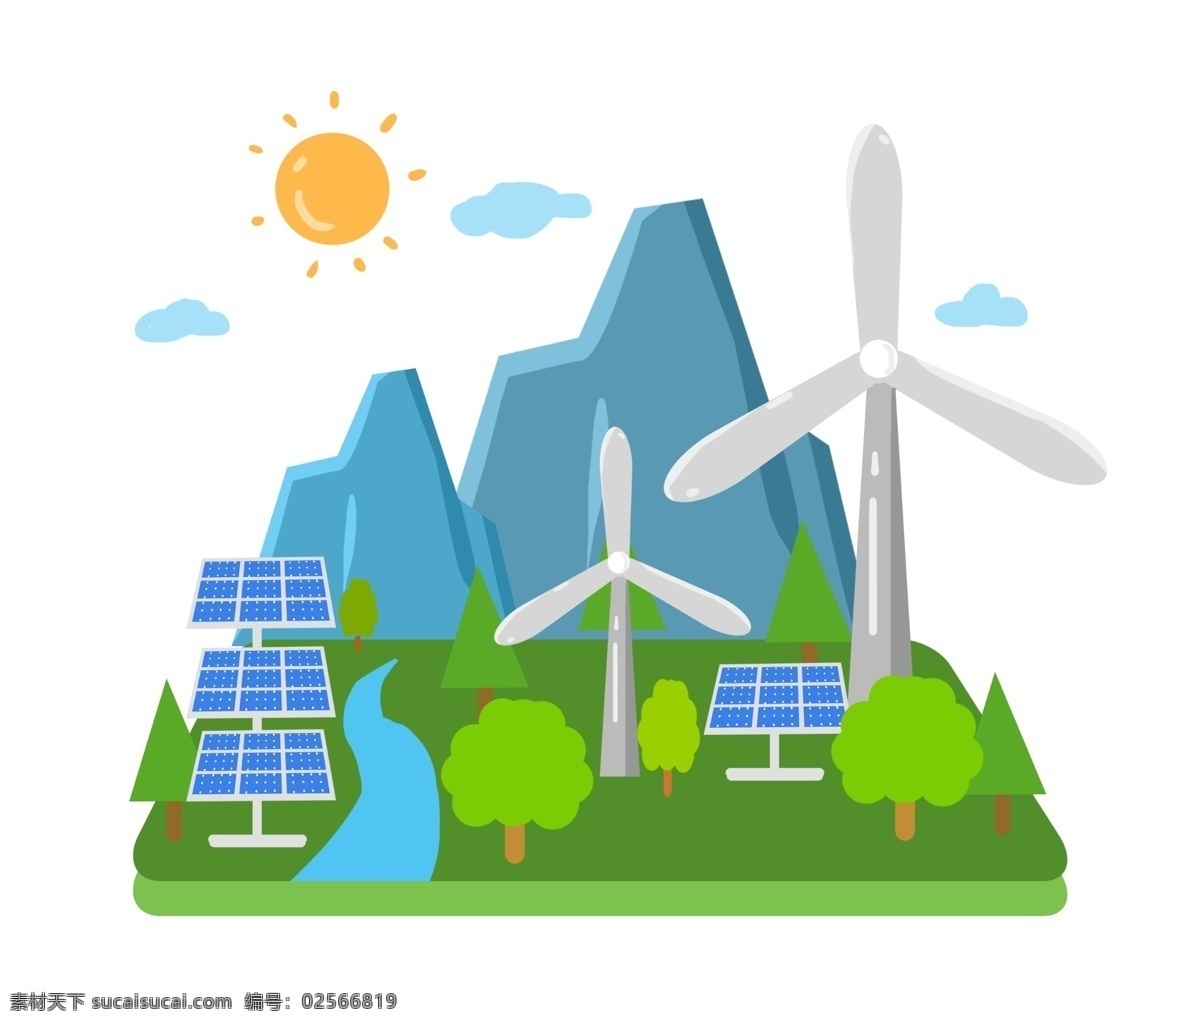 风车 环保 节能 减排 火红的太阳 卡通插画 风车环保 风力发电 节约能源 节能减排 绿色的大树